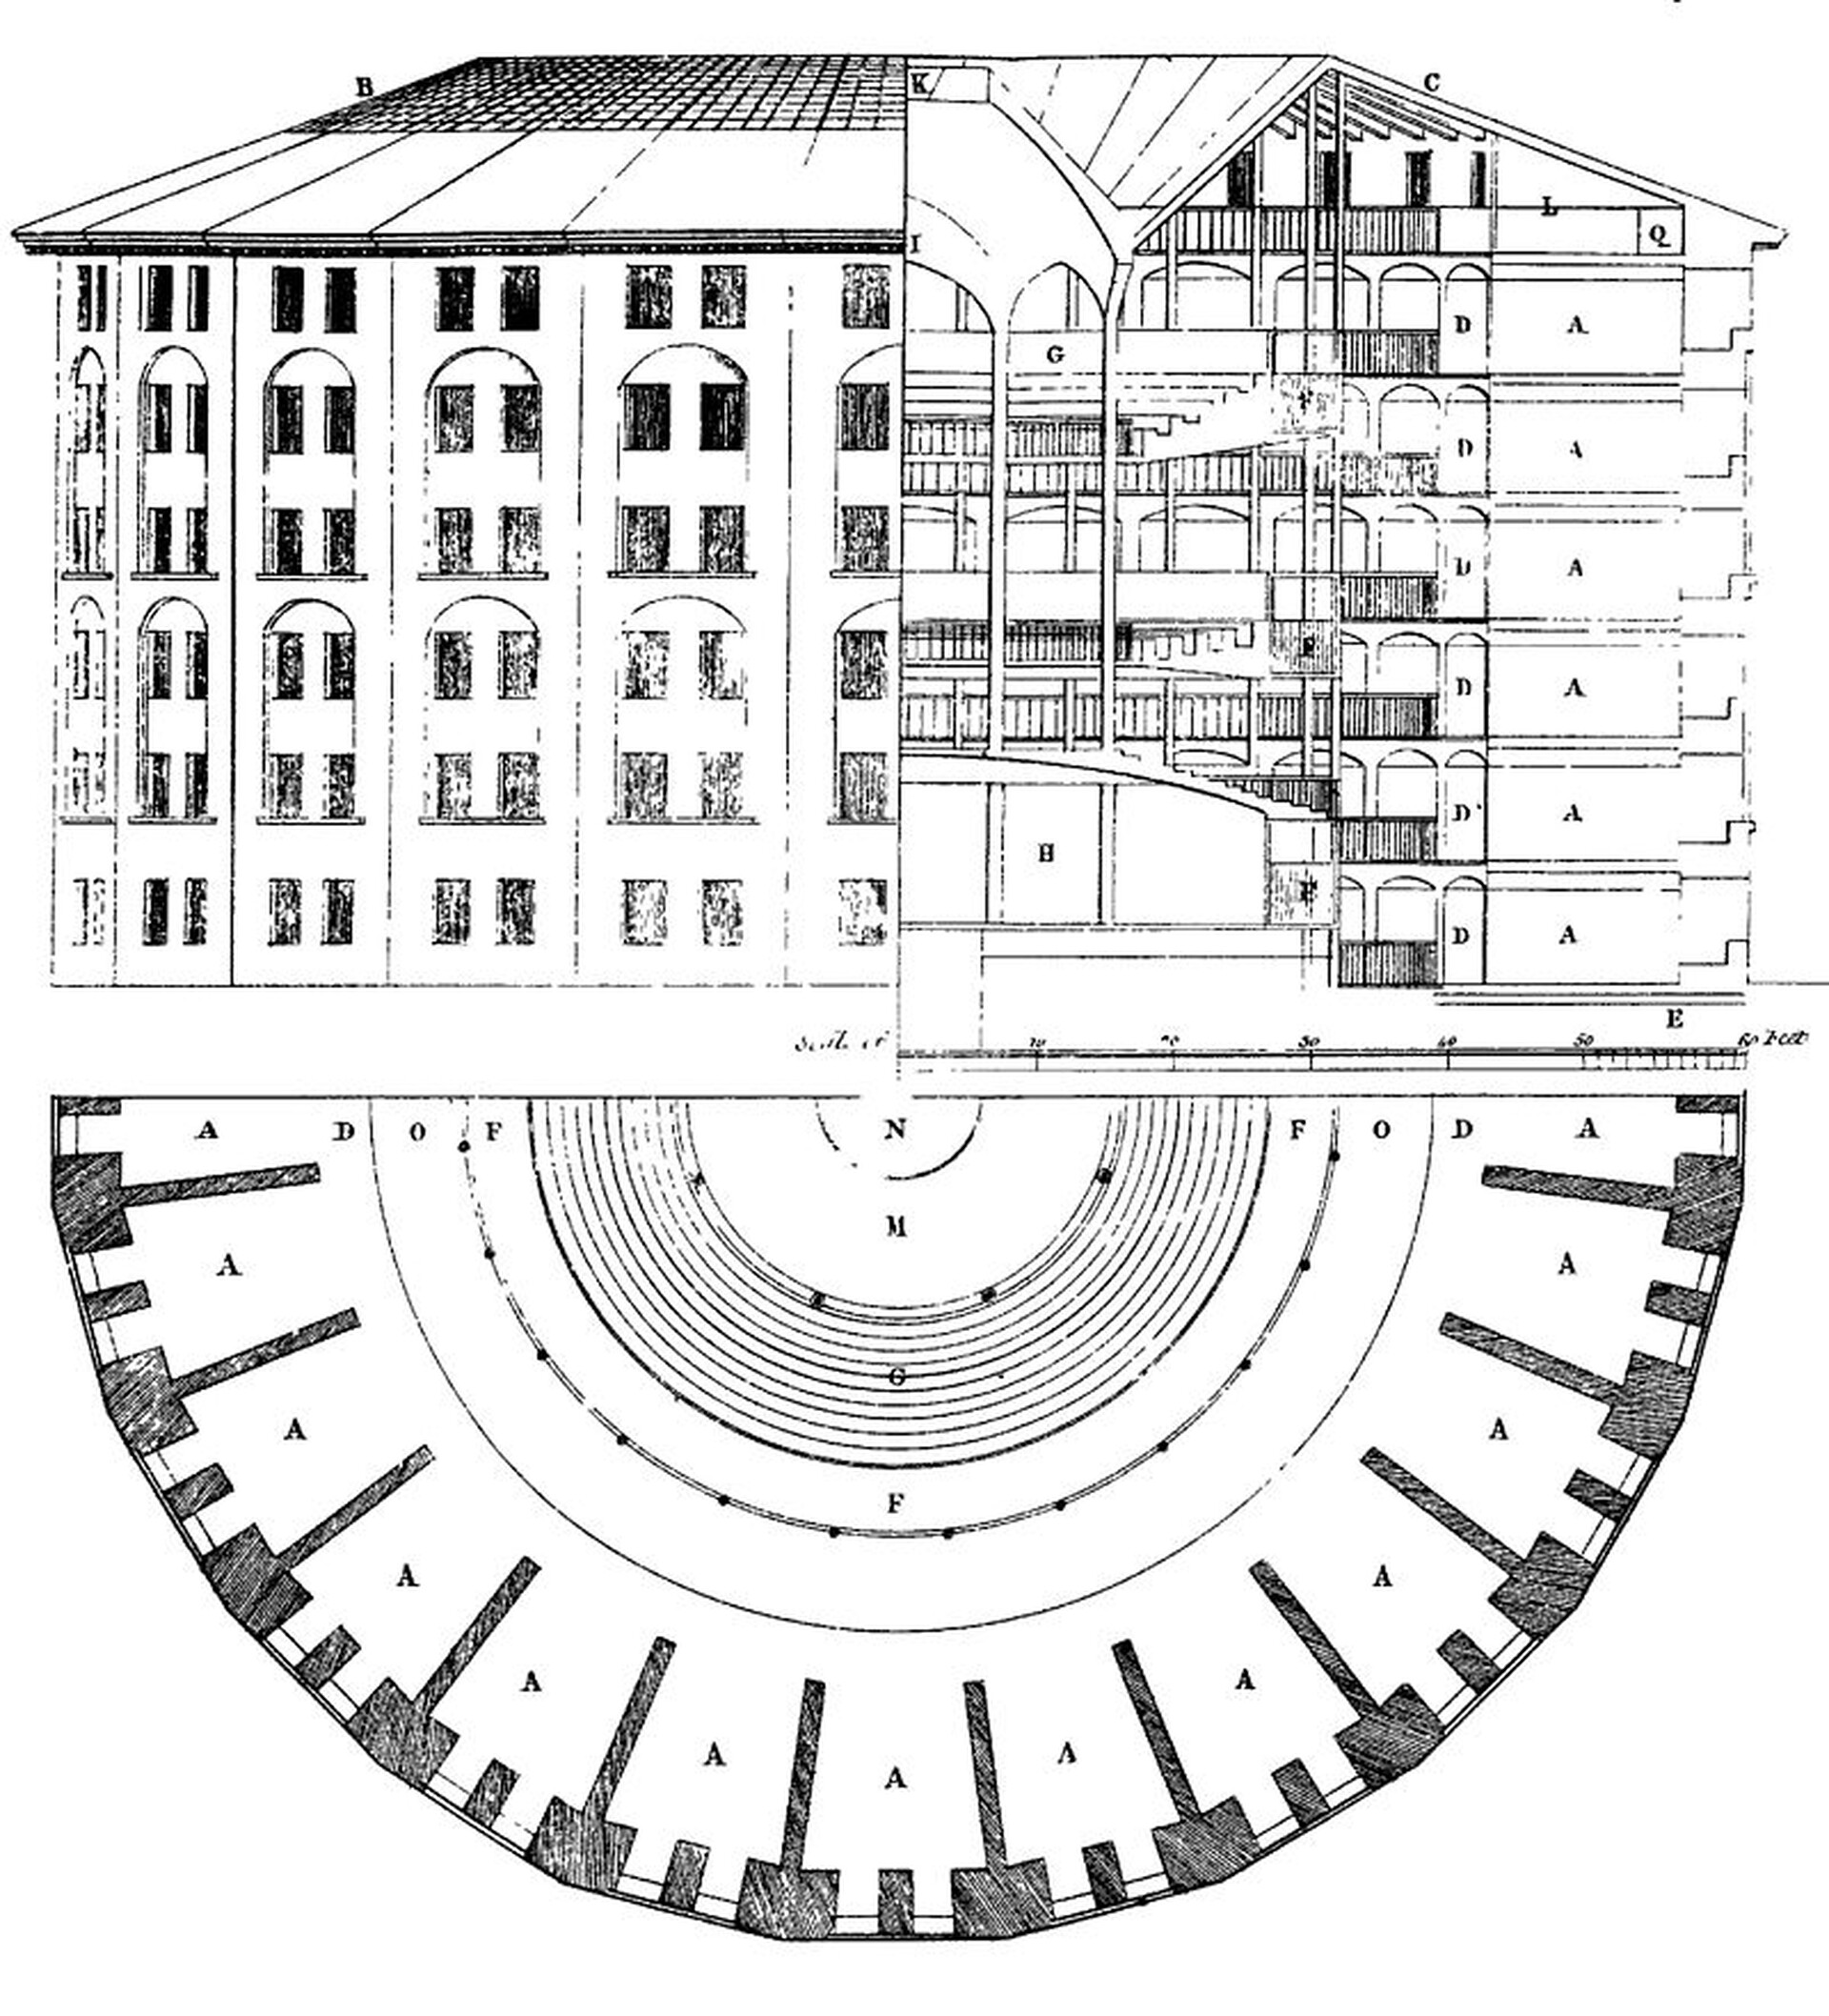  Na czarno-białym obrazku przedstawiony został rysunek panoptykonu. Wedle przedstawionego schematu jest to okrągły budynek więzienia, na środku którego ma stać wieża strażnicza. 